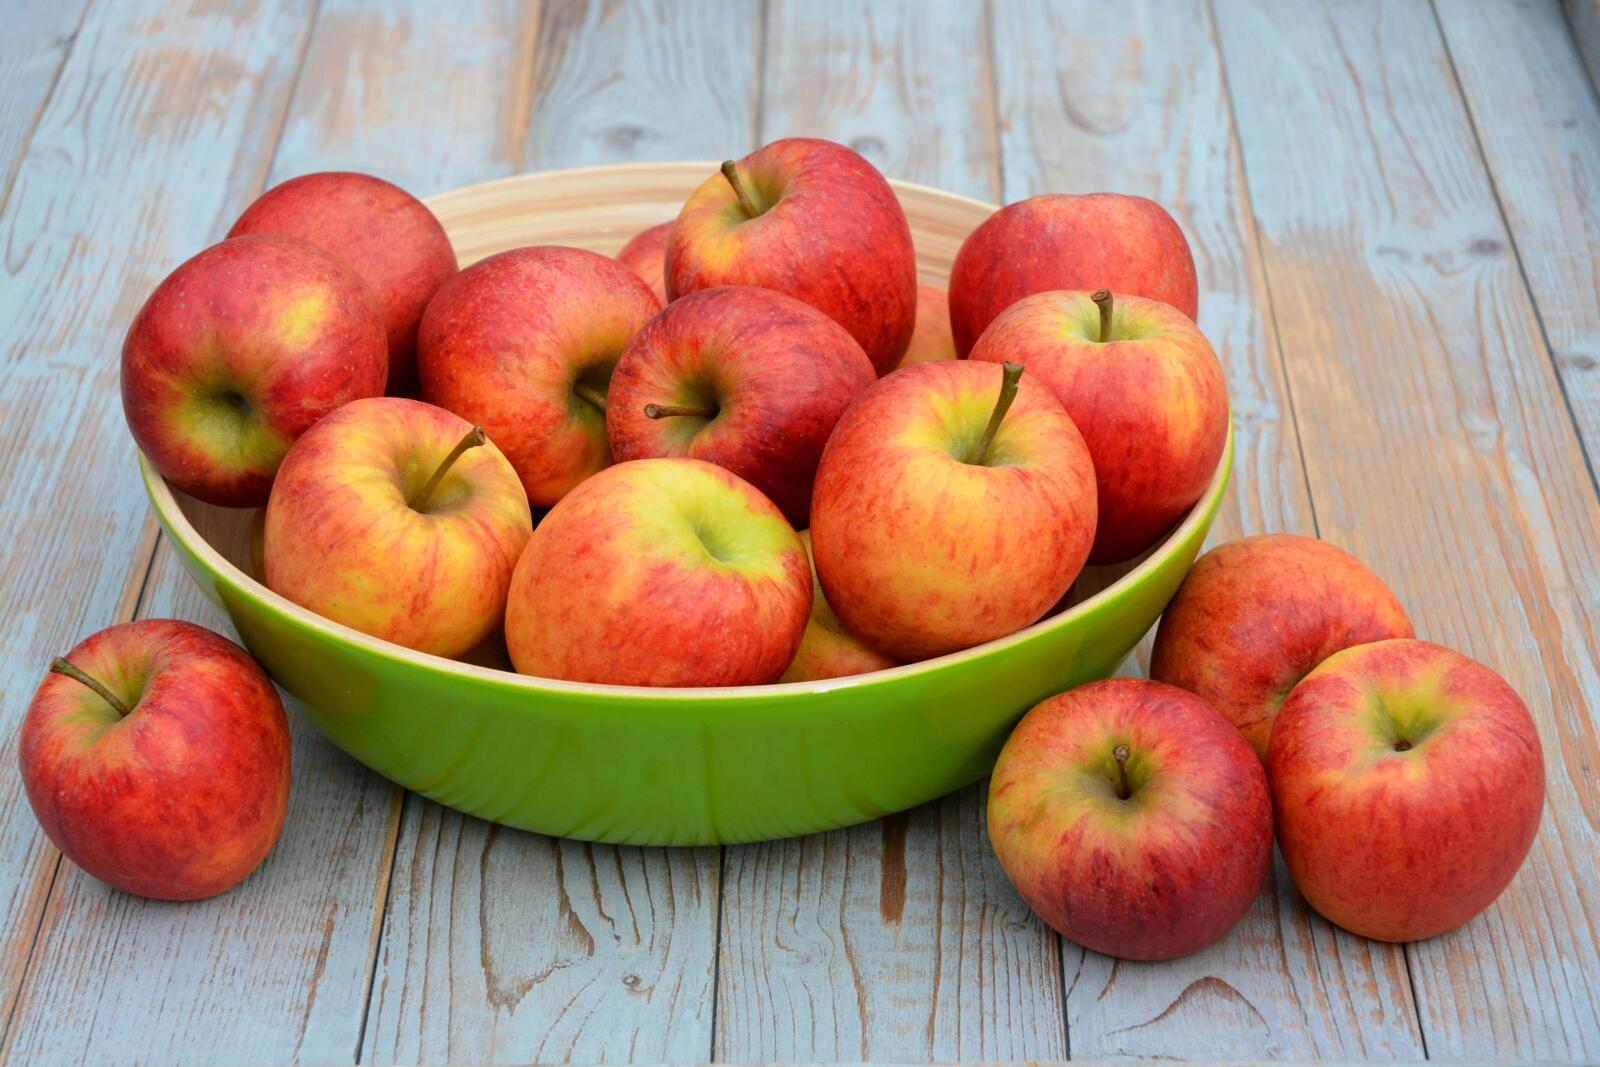 Hoeveel kilo appelen heb je nodig voor 1 kilo appelmoes? Dagelijkse kost